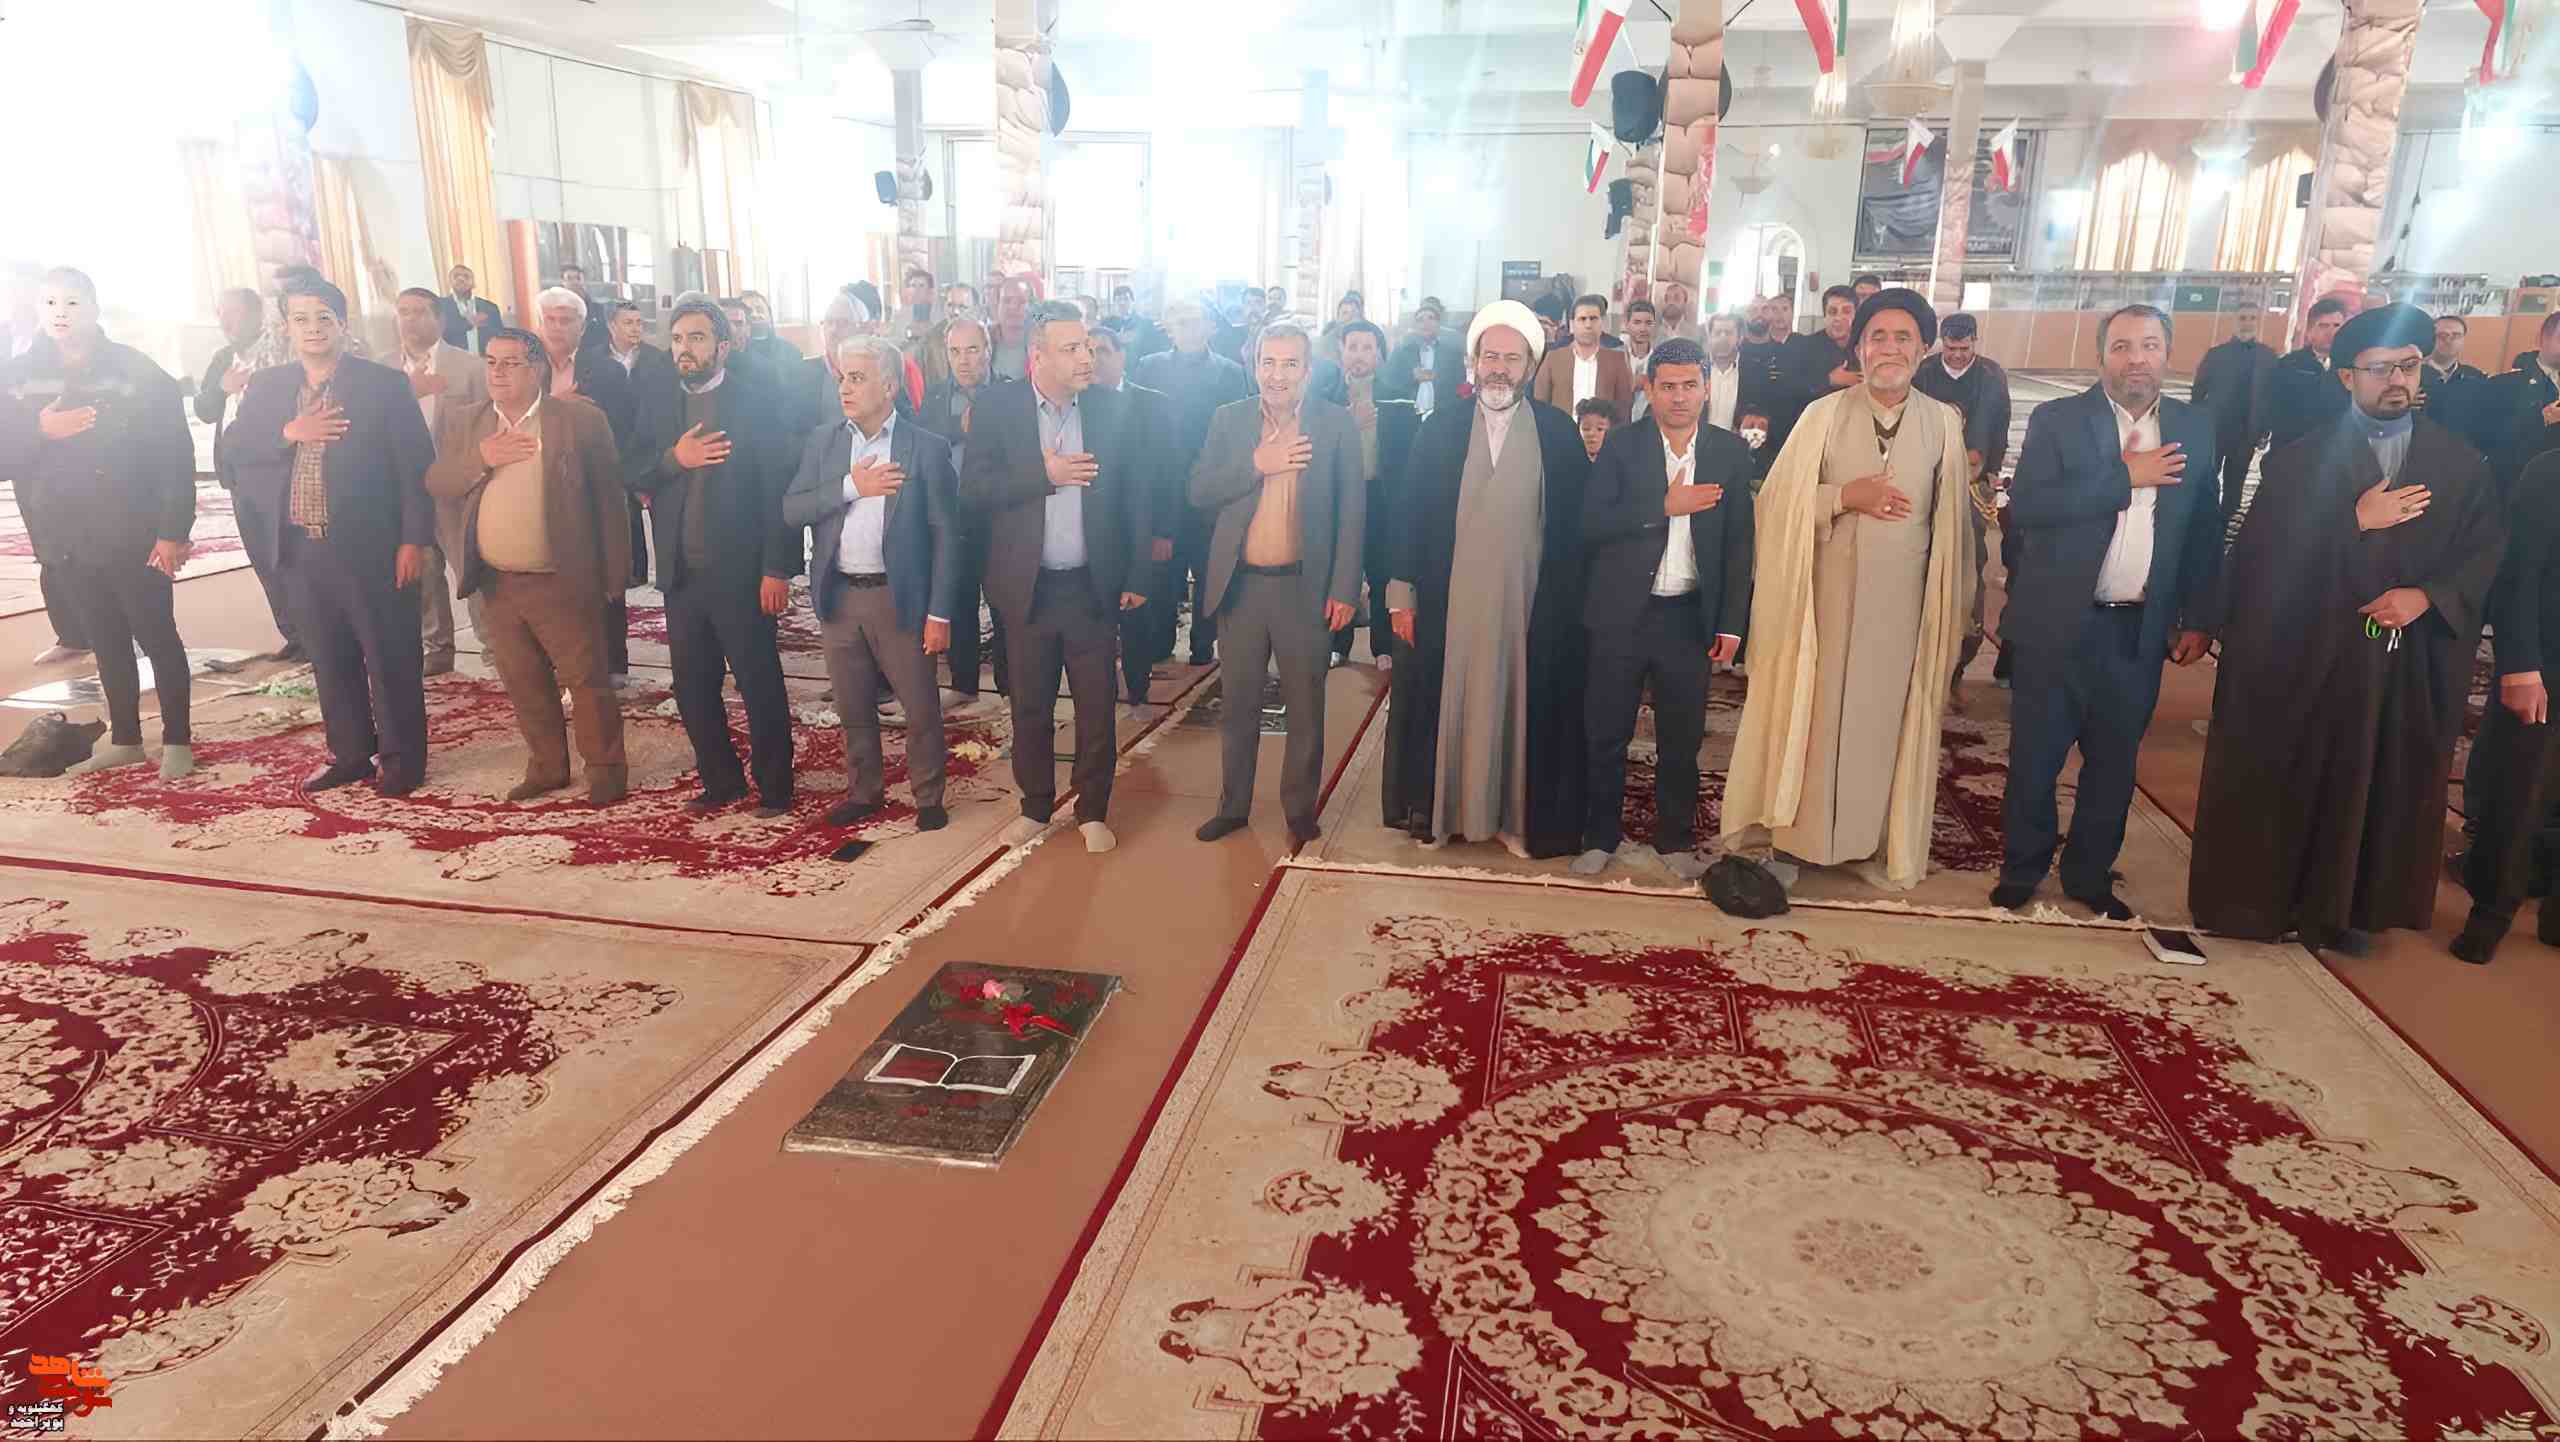 برگزاری مراسم گرامیداشت چهلمین روز شهادت شهدای گلزار مطهر کرمان در شهر یاسوج